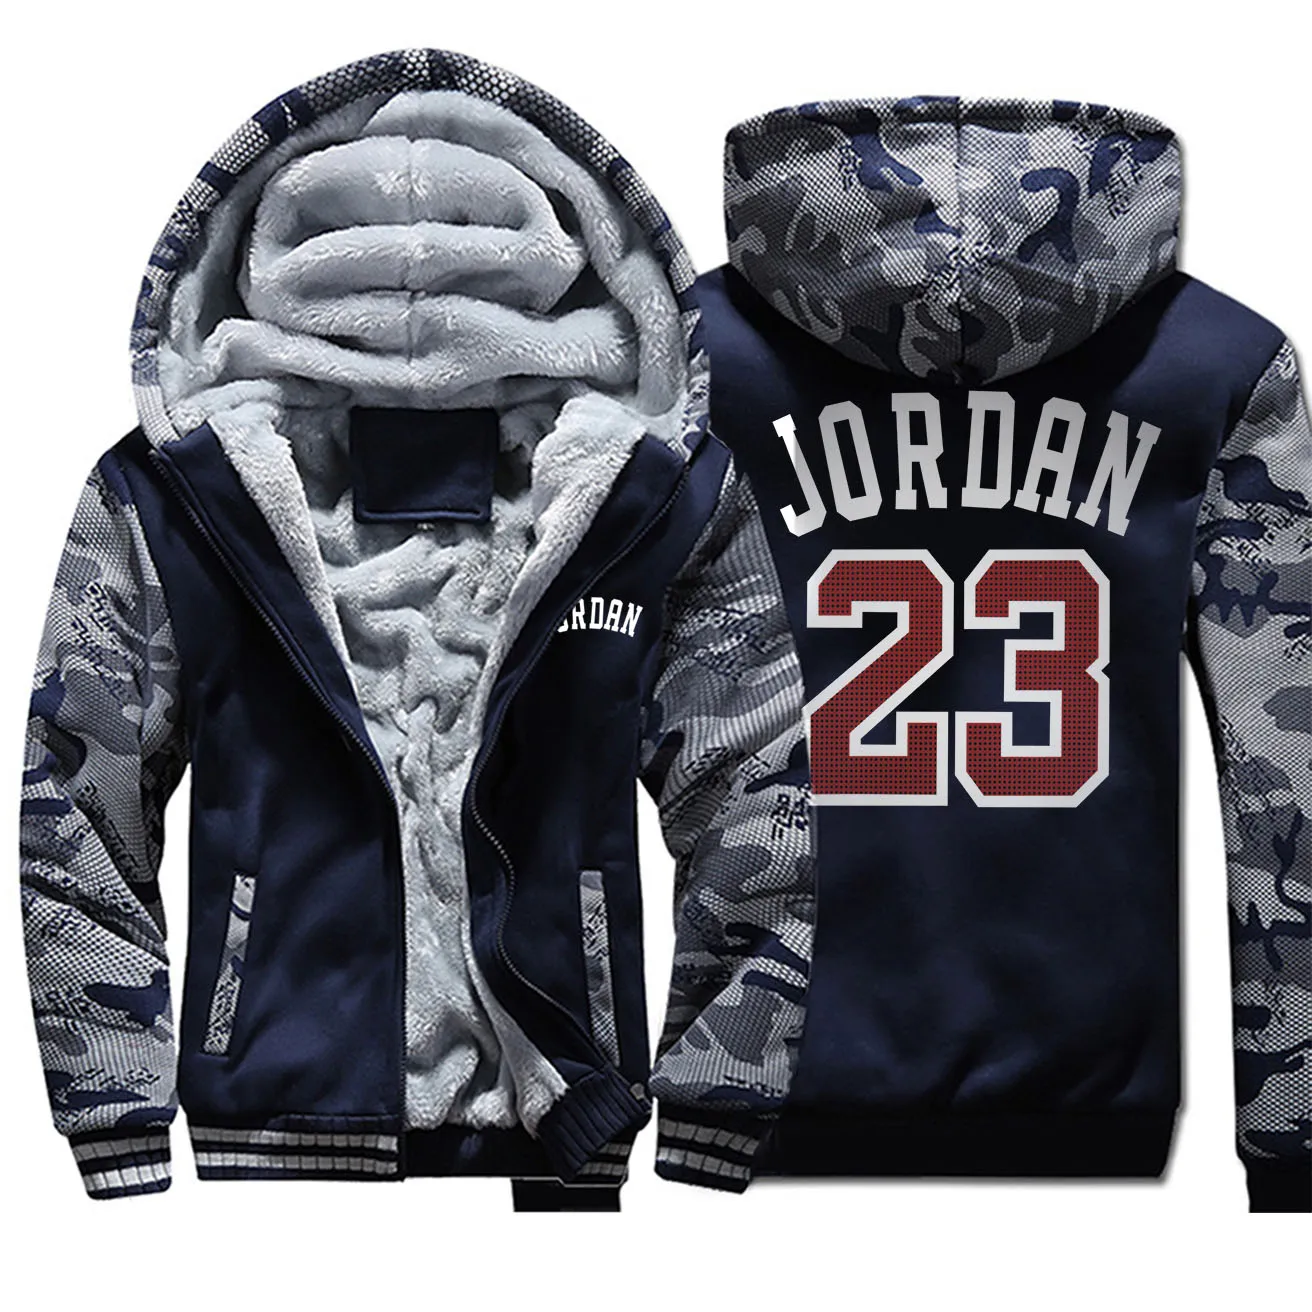 Jordan 23 мужские толстовки с буквенным принтом зимние утепленные мужские куртки камуфляжные пальто с рукавами стильная популярная верхняя мужская спортивная одежда